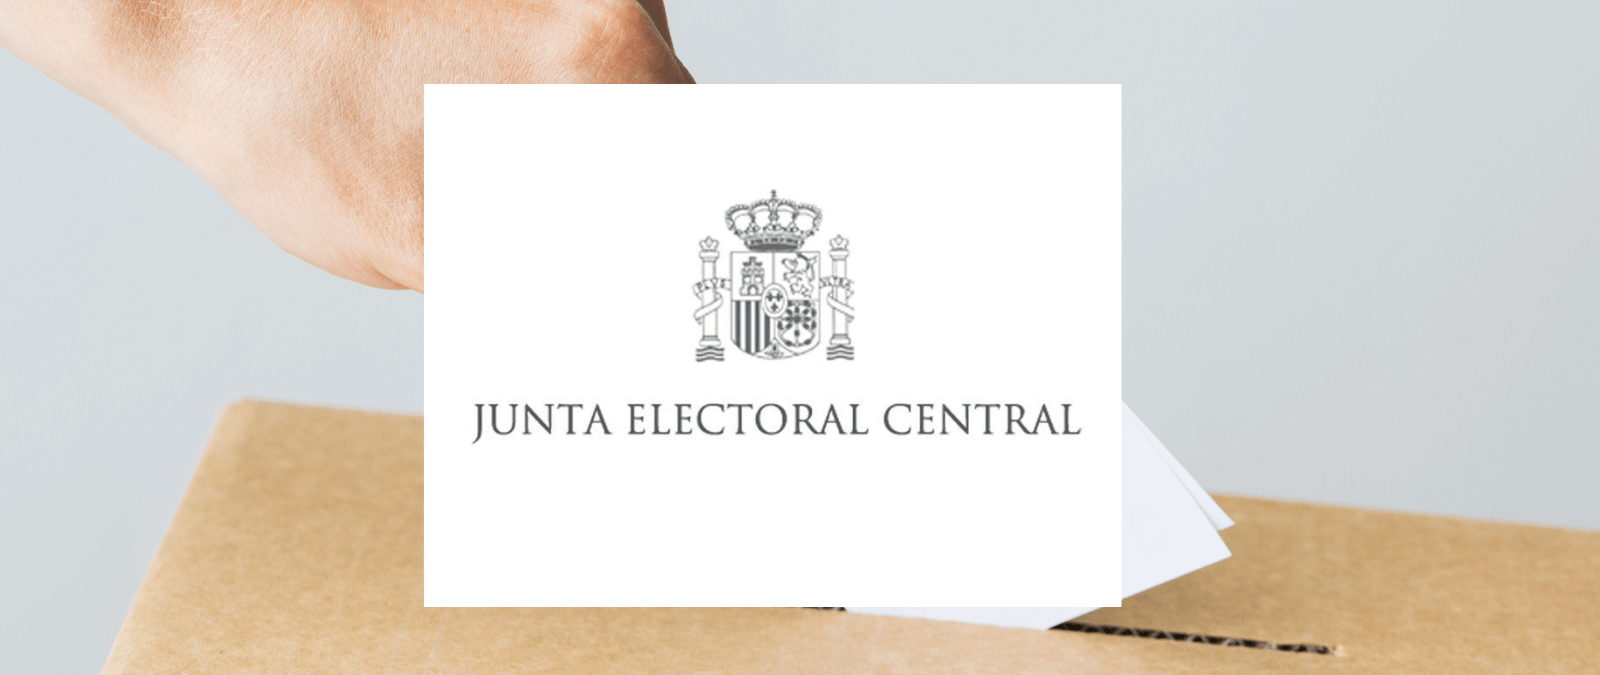 ¿Qué son y cómo funcionan las juntas electorales?